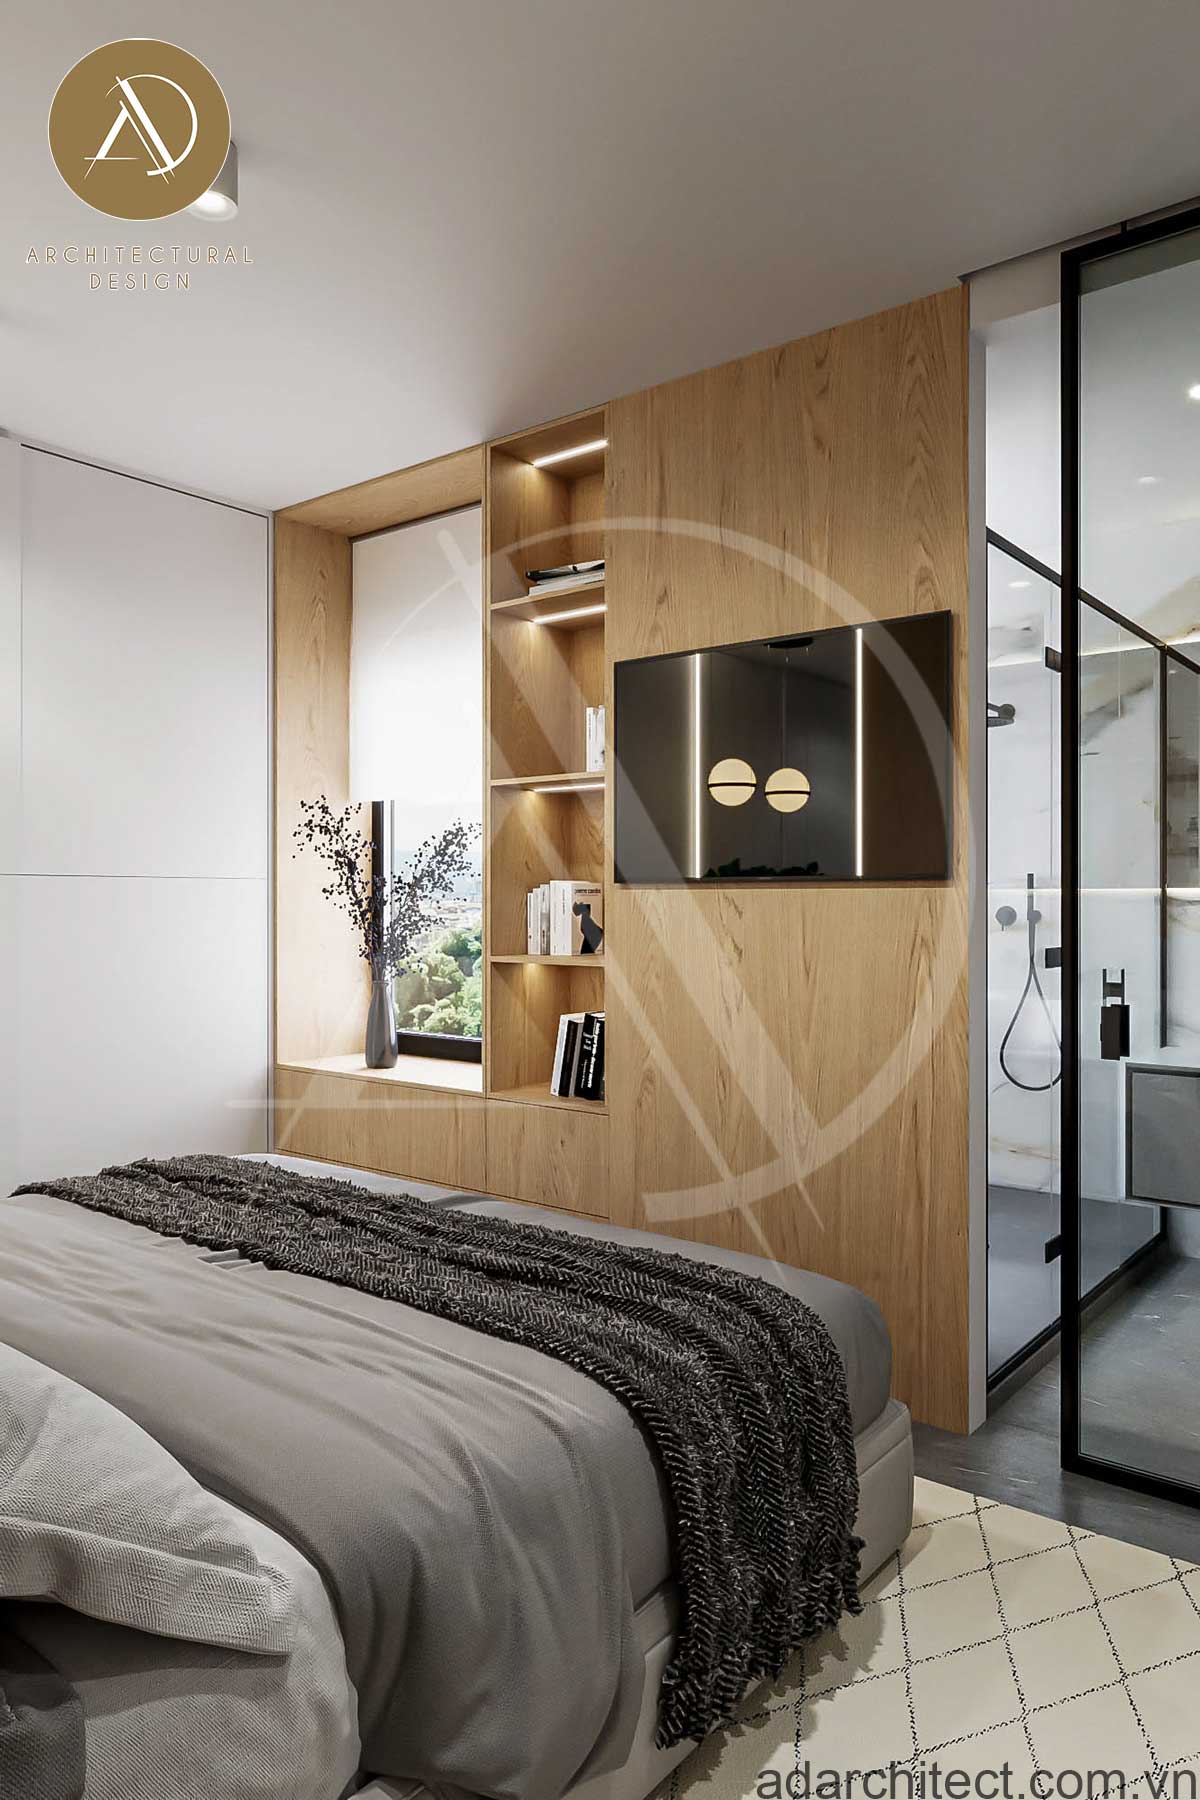 biệt thự 1 tầng 4 phòng ngủ: Nhà tắm thiết kế tiện lợi khi được đặt trong phòng ngủ